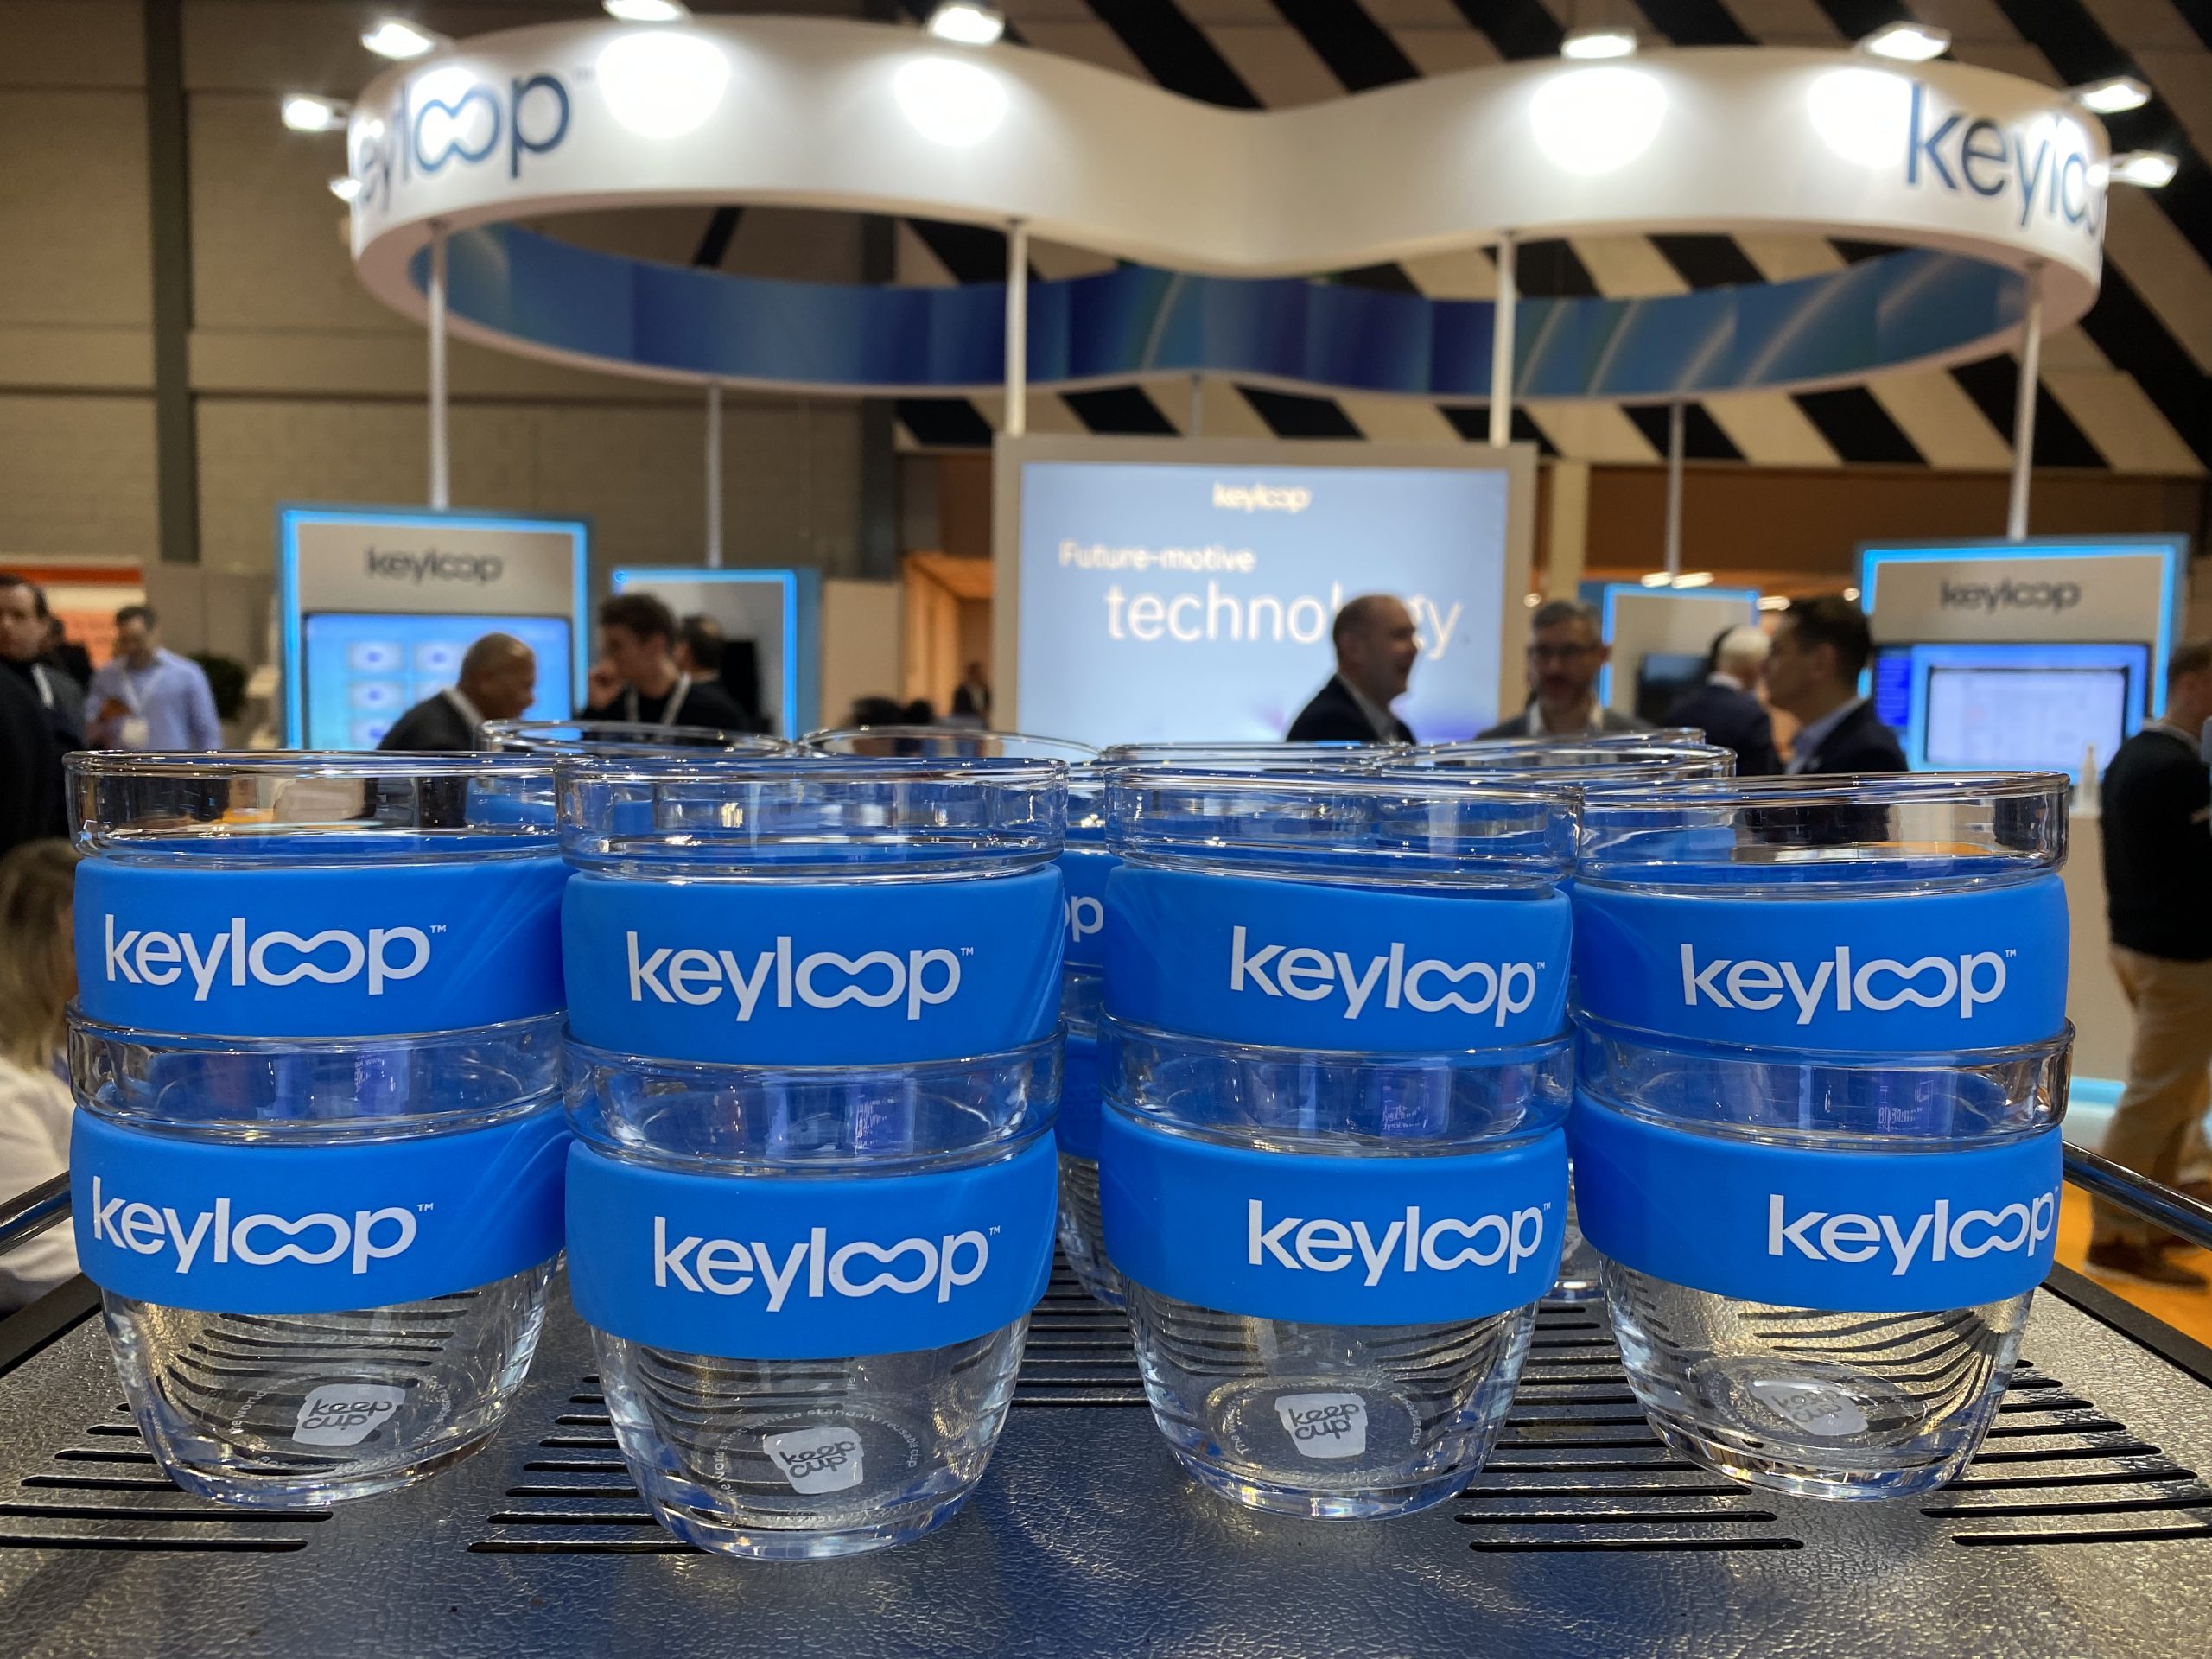 The Mobile Coffee Bean photos of corporate branding, Keyloop branded glasses